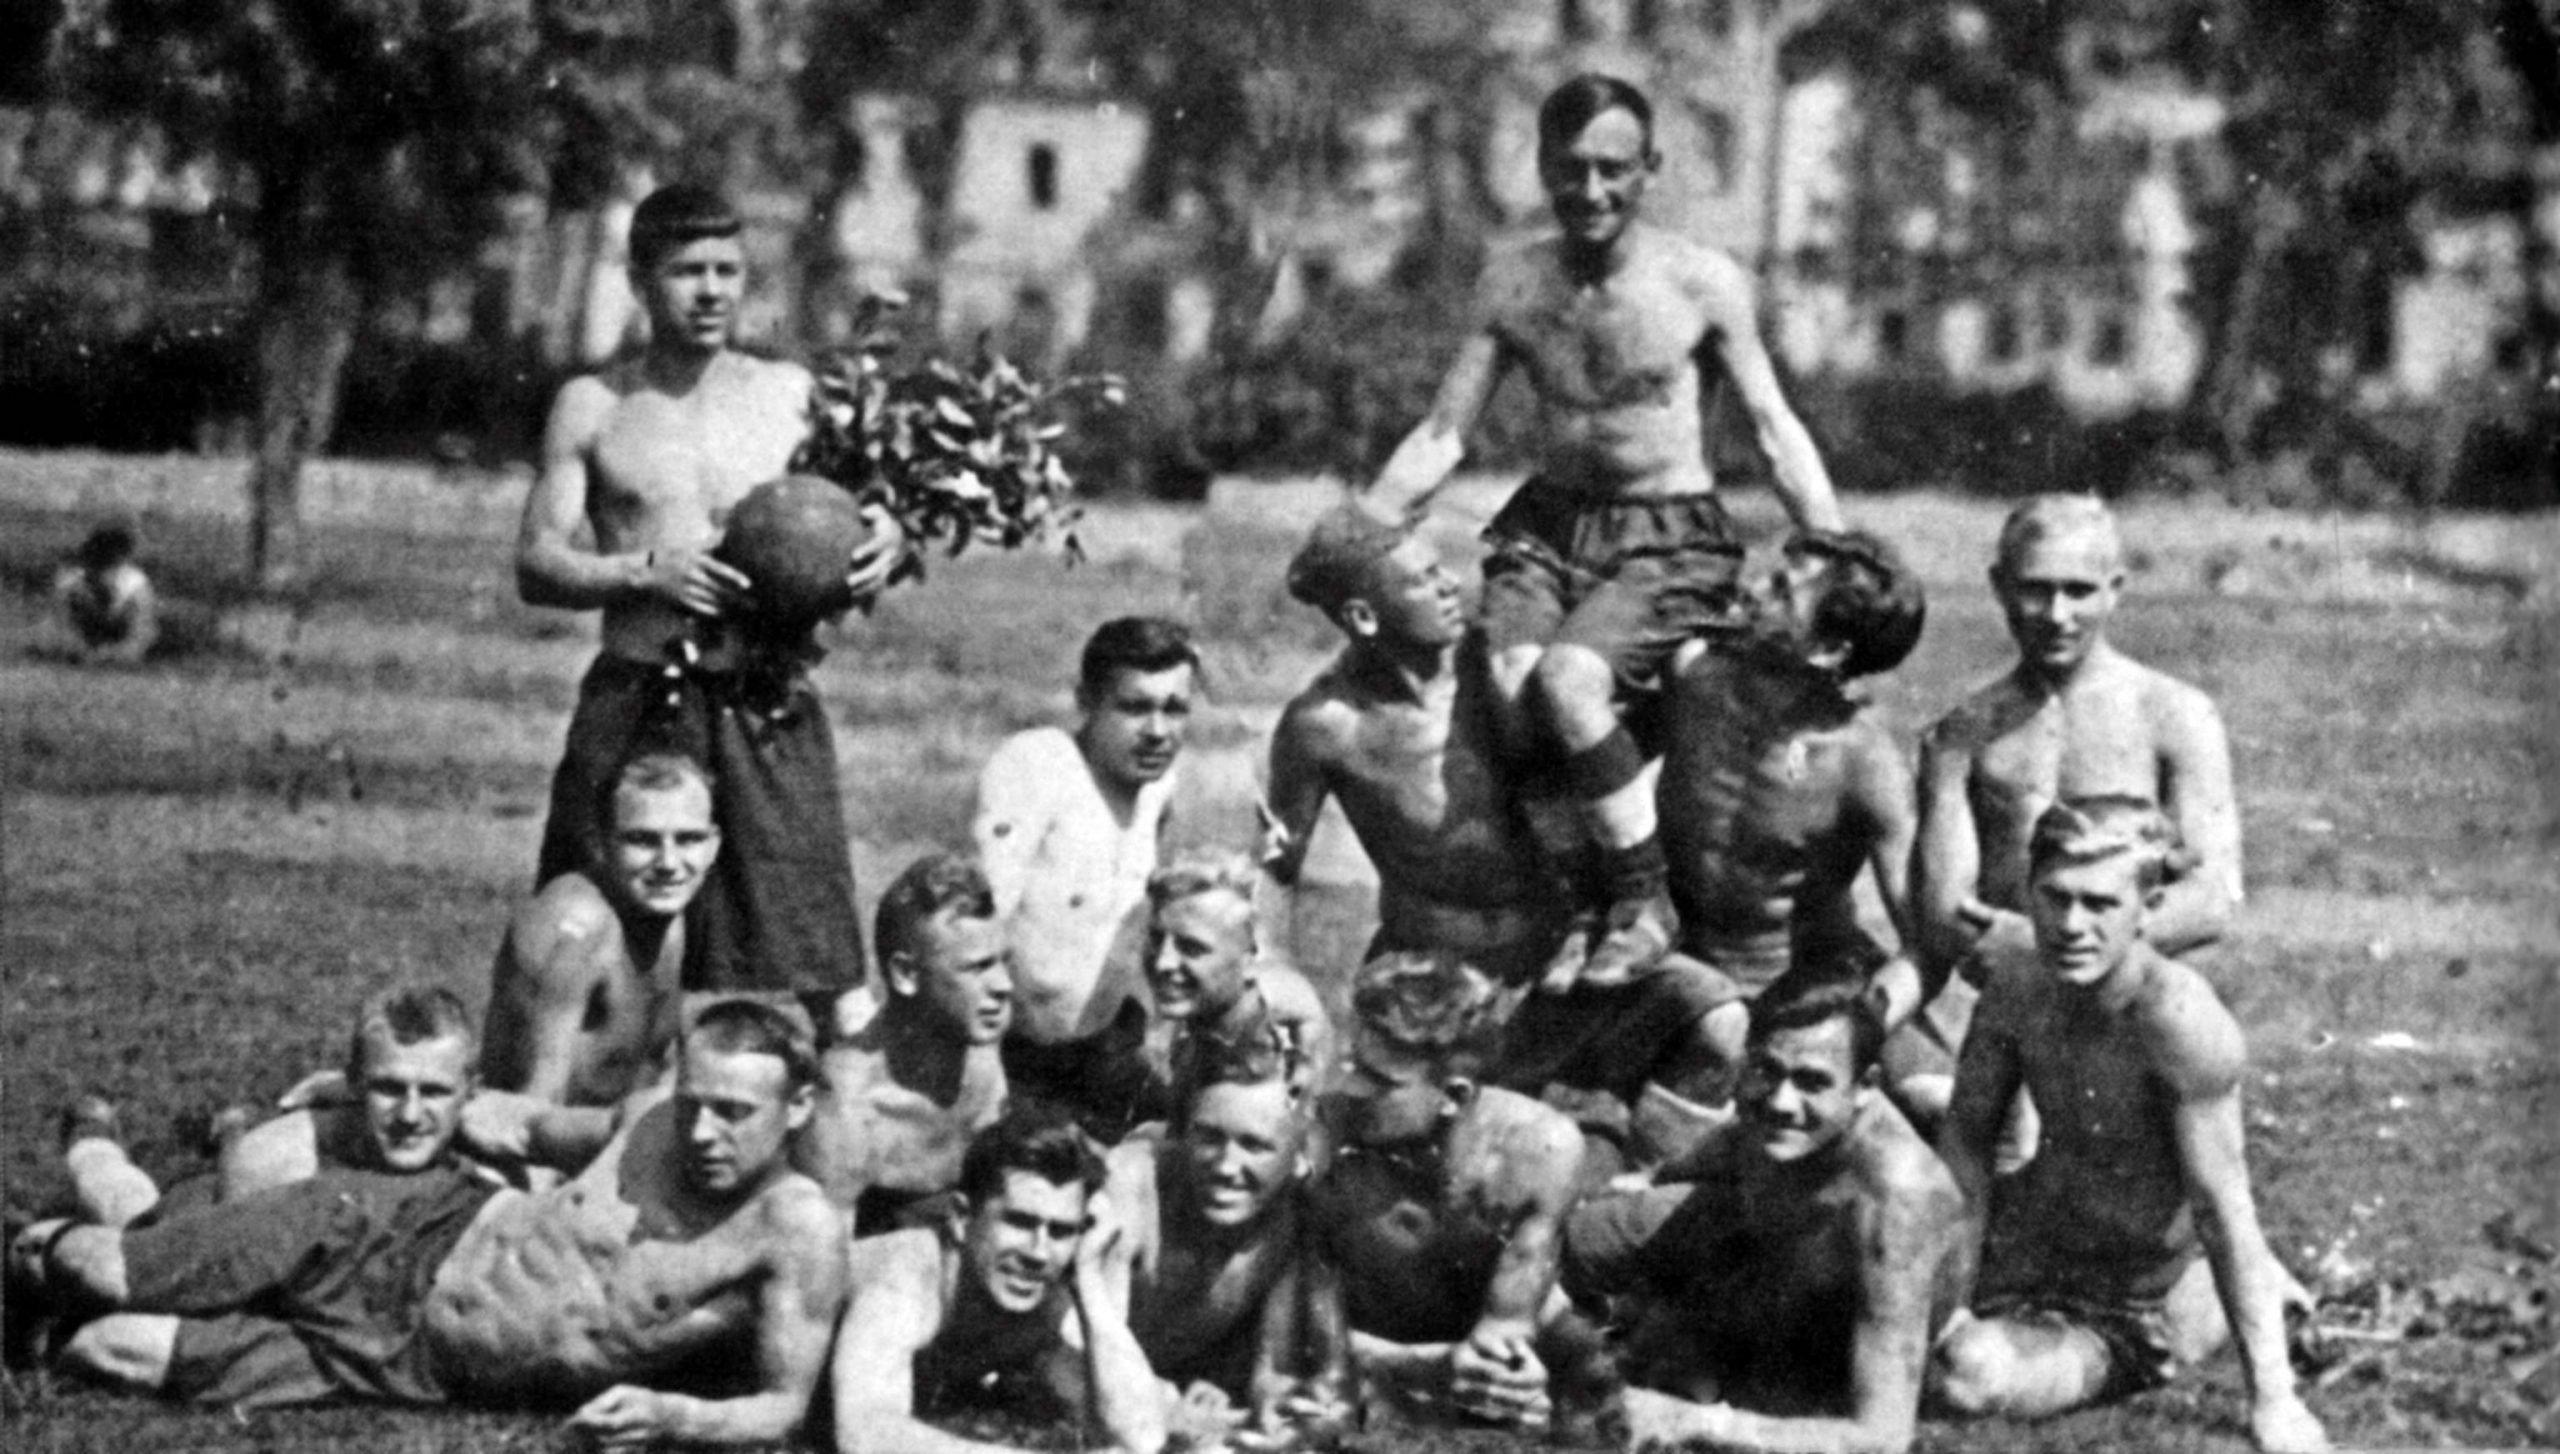 Soviet footballers of the Leningrad Dynamo team